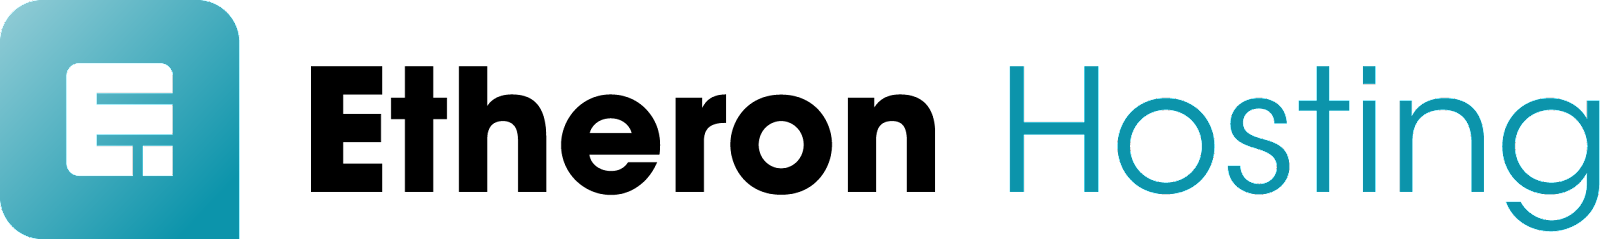 Etheron Hosting logo